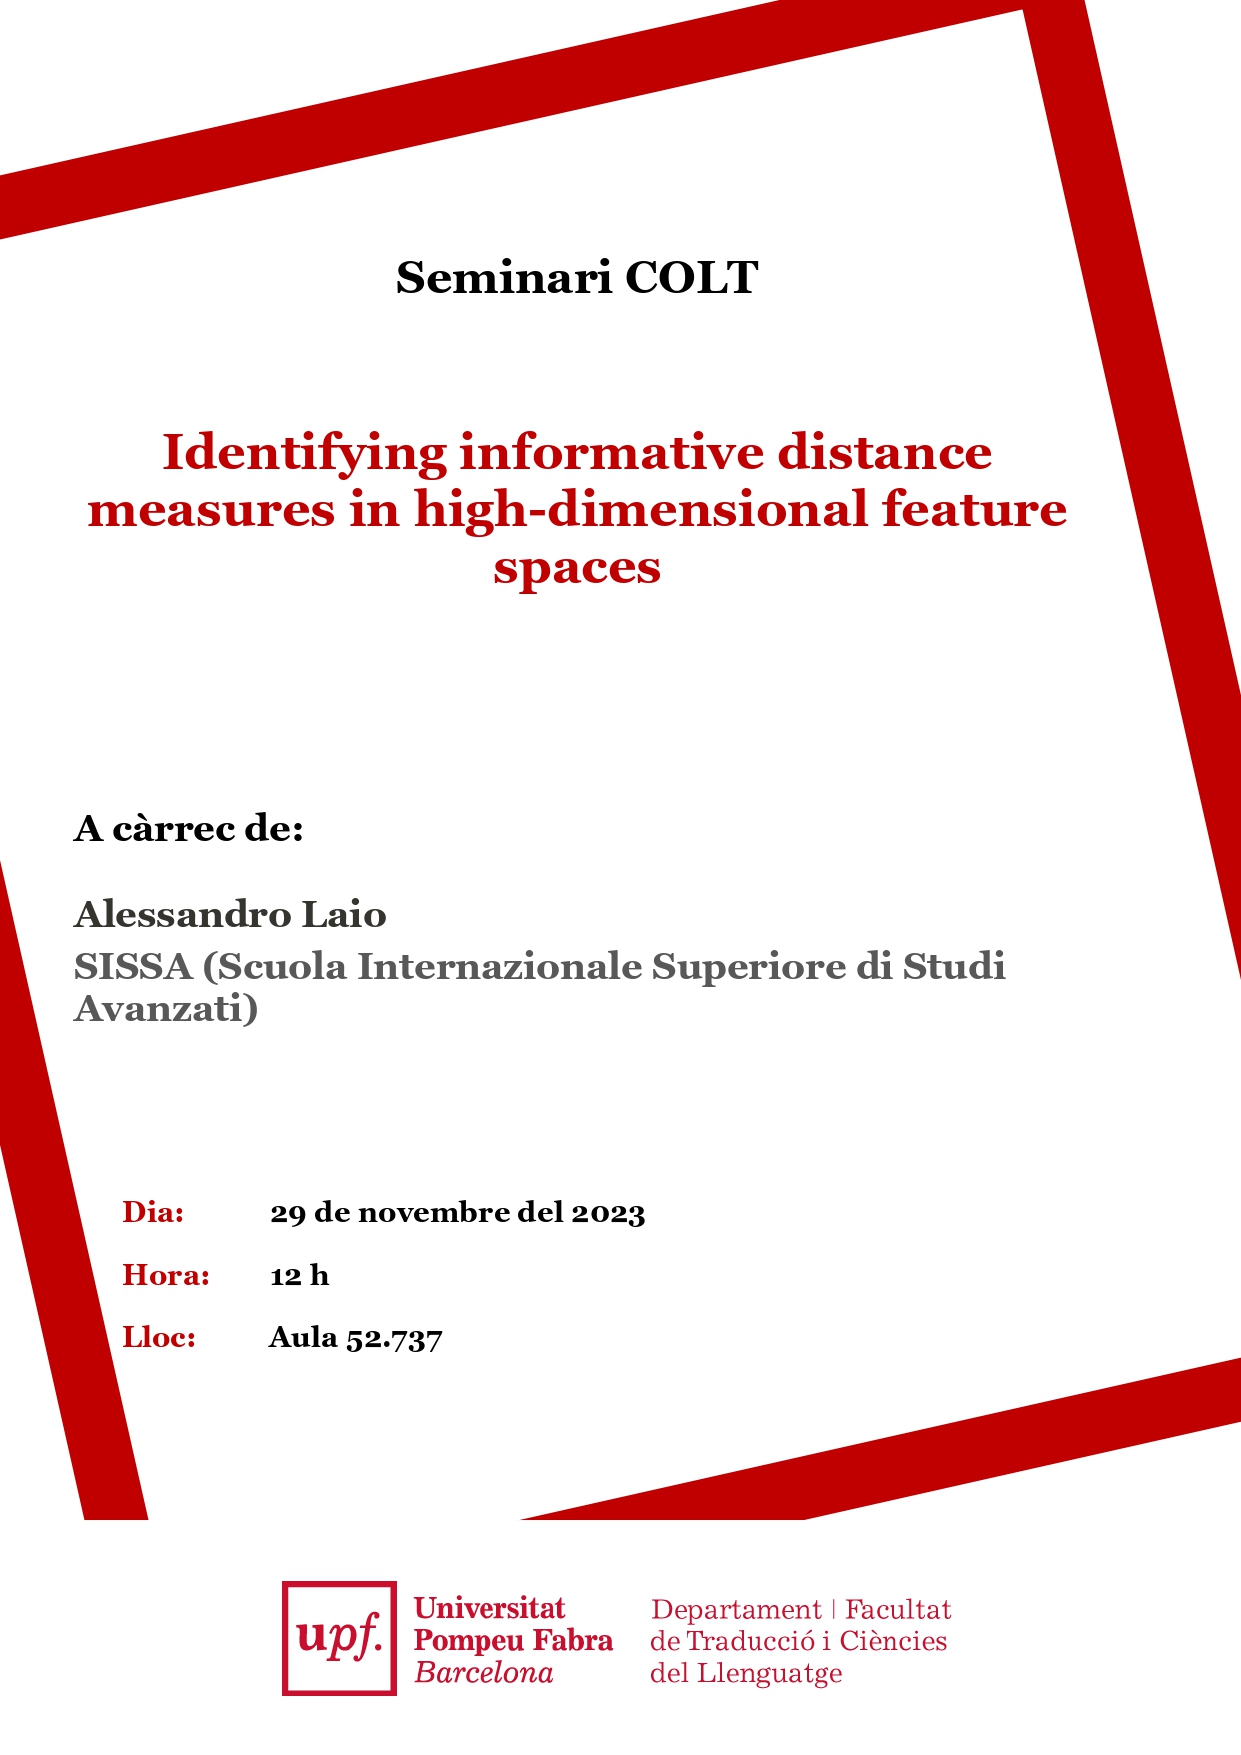 29/11/2023 Seminari del COLT, a càrrec d'Alessandro Laio, SISSA (Scuola Internazionale Superiore di Studi Avanzati)